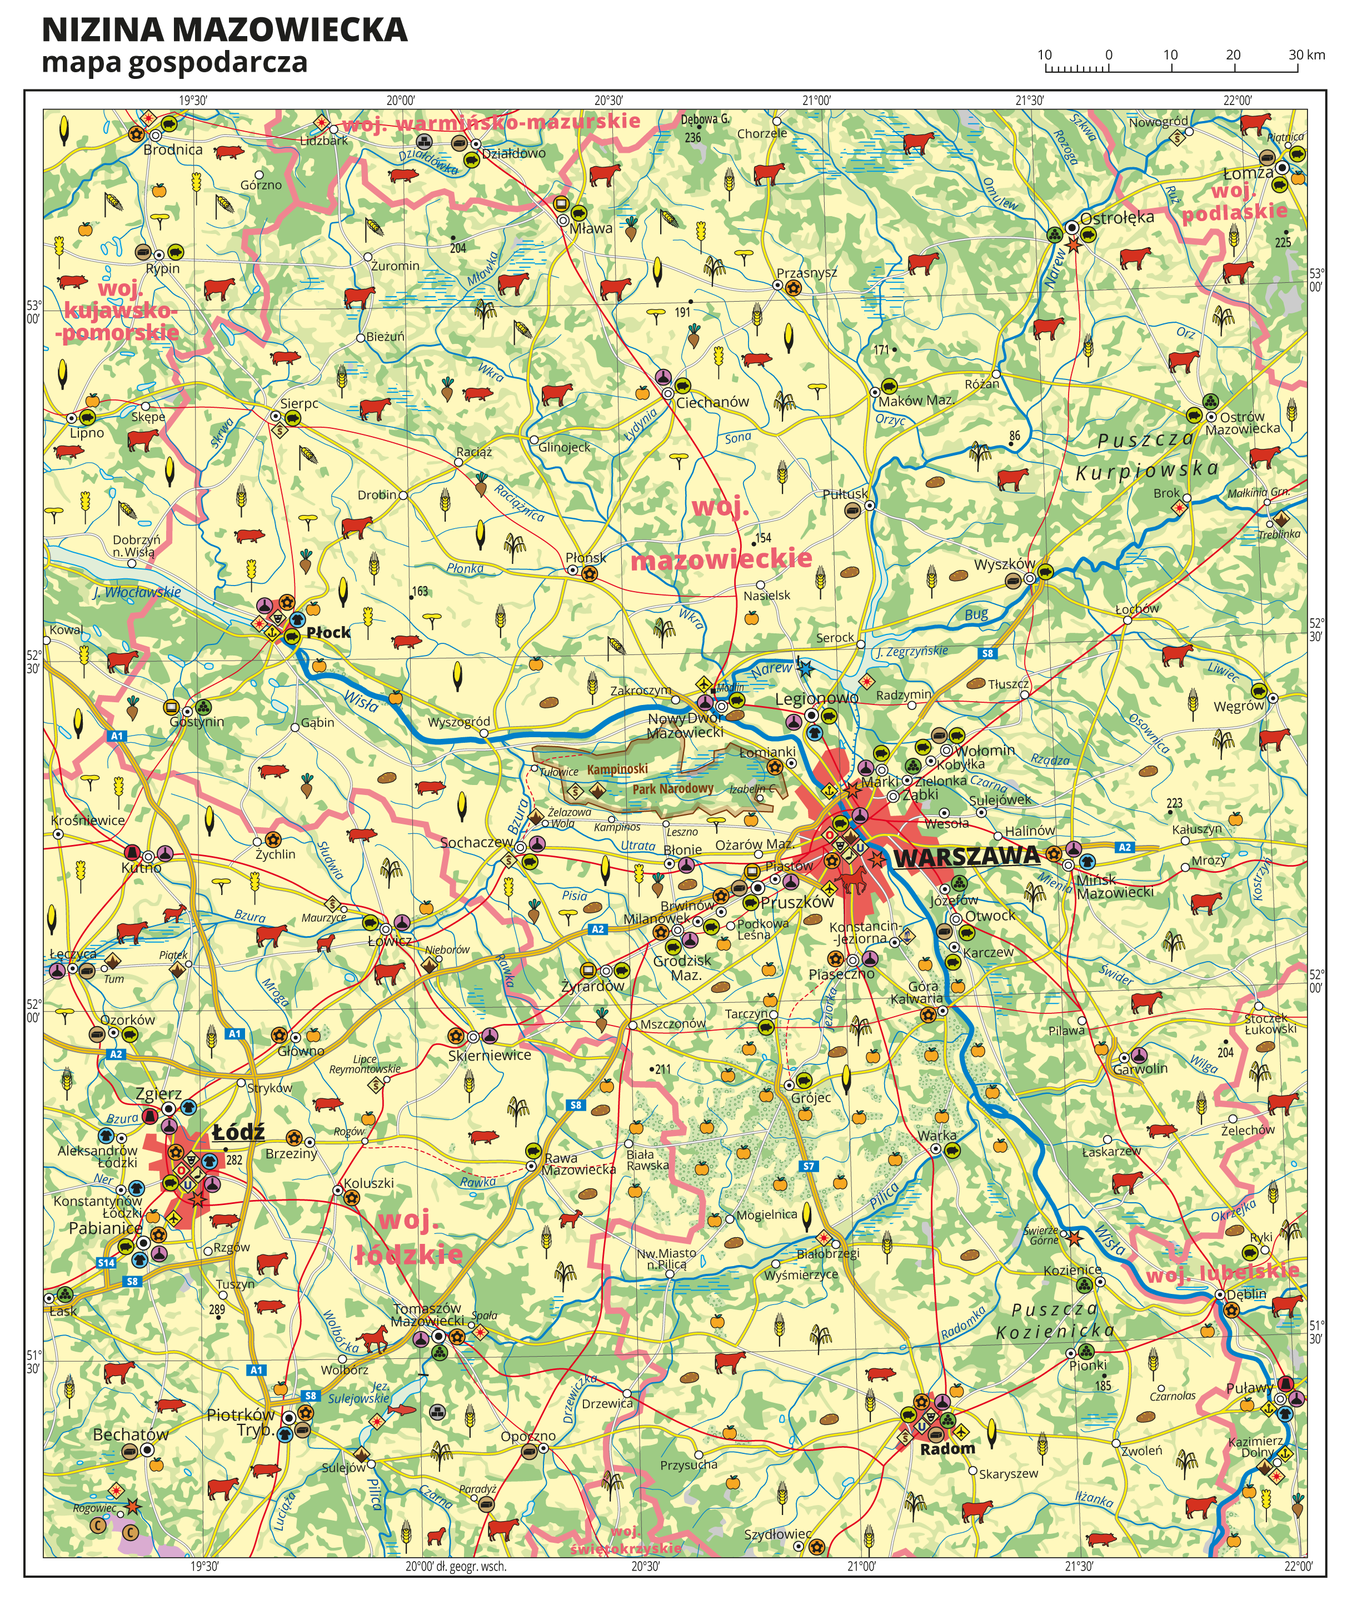 Ilustracja przedstawia mapę gospodarczą Niziny Mazowieckiej. Tło mapy w kolorze żółtym (grunty orne), jasnozielonym (łąki i pastwiska) i zielonym (lasy). W centralnej części mapy Warszawa, z lewej strony Łódź, na dole mapy Radom. Na mapie sygnatury obrazujące uprawy poszczególnych roślin, hodowlę zwierząt, przemysł, górnictwo i energetykę, komunikację, turystykę, naukę, kulturę i sztukę. Największe zagęszczenie sygnatur w Warszawie i Łodzi. Duże zagęszczenie sygnatur w Radomiu, Płocku, Łomży i Tomaszowie Mazowieckim. Na obszarze całej mapy równomiernie rozłożone sygnatury związane z hodowlą zwierząt i uprawą roślin. Na mapie przedstawiono sieć dróg i kolei, porty wodne i lotnicze, granice województw. Opisano województwa mazowieckie, łódzkie, lubelskie, podlaskie, kujawsko-pomorskie i warmińsko-mazurskie. Mapa zawiera południki i równoleżniki, dookoła mapy w białej ramce opisano współrzędne geograficzne co trzydzieści minut.